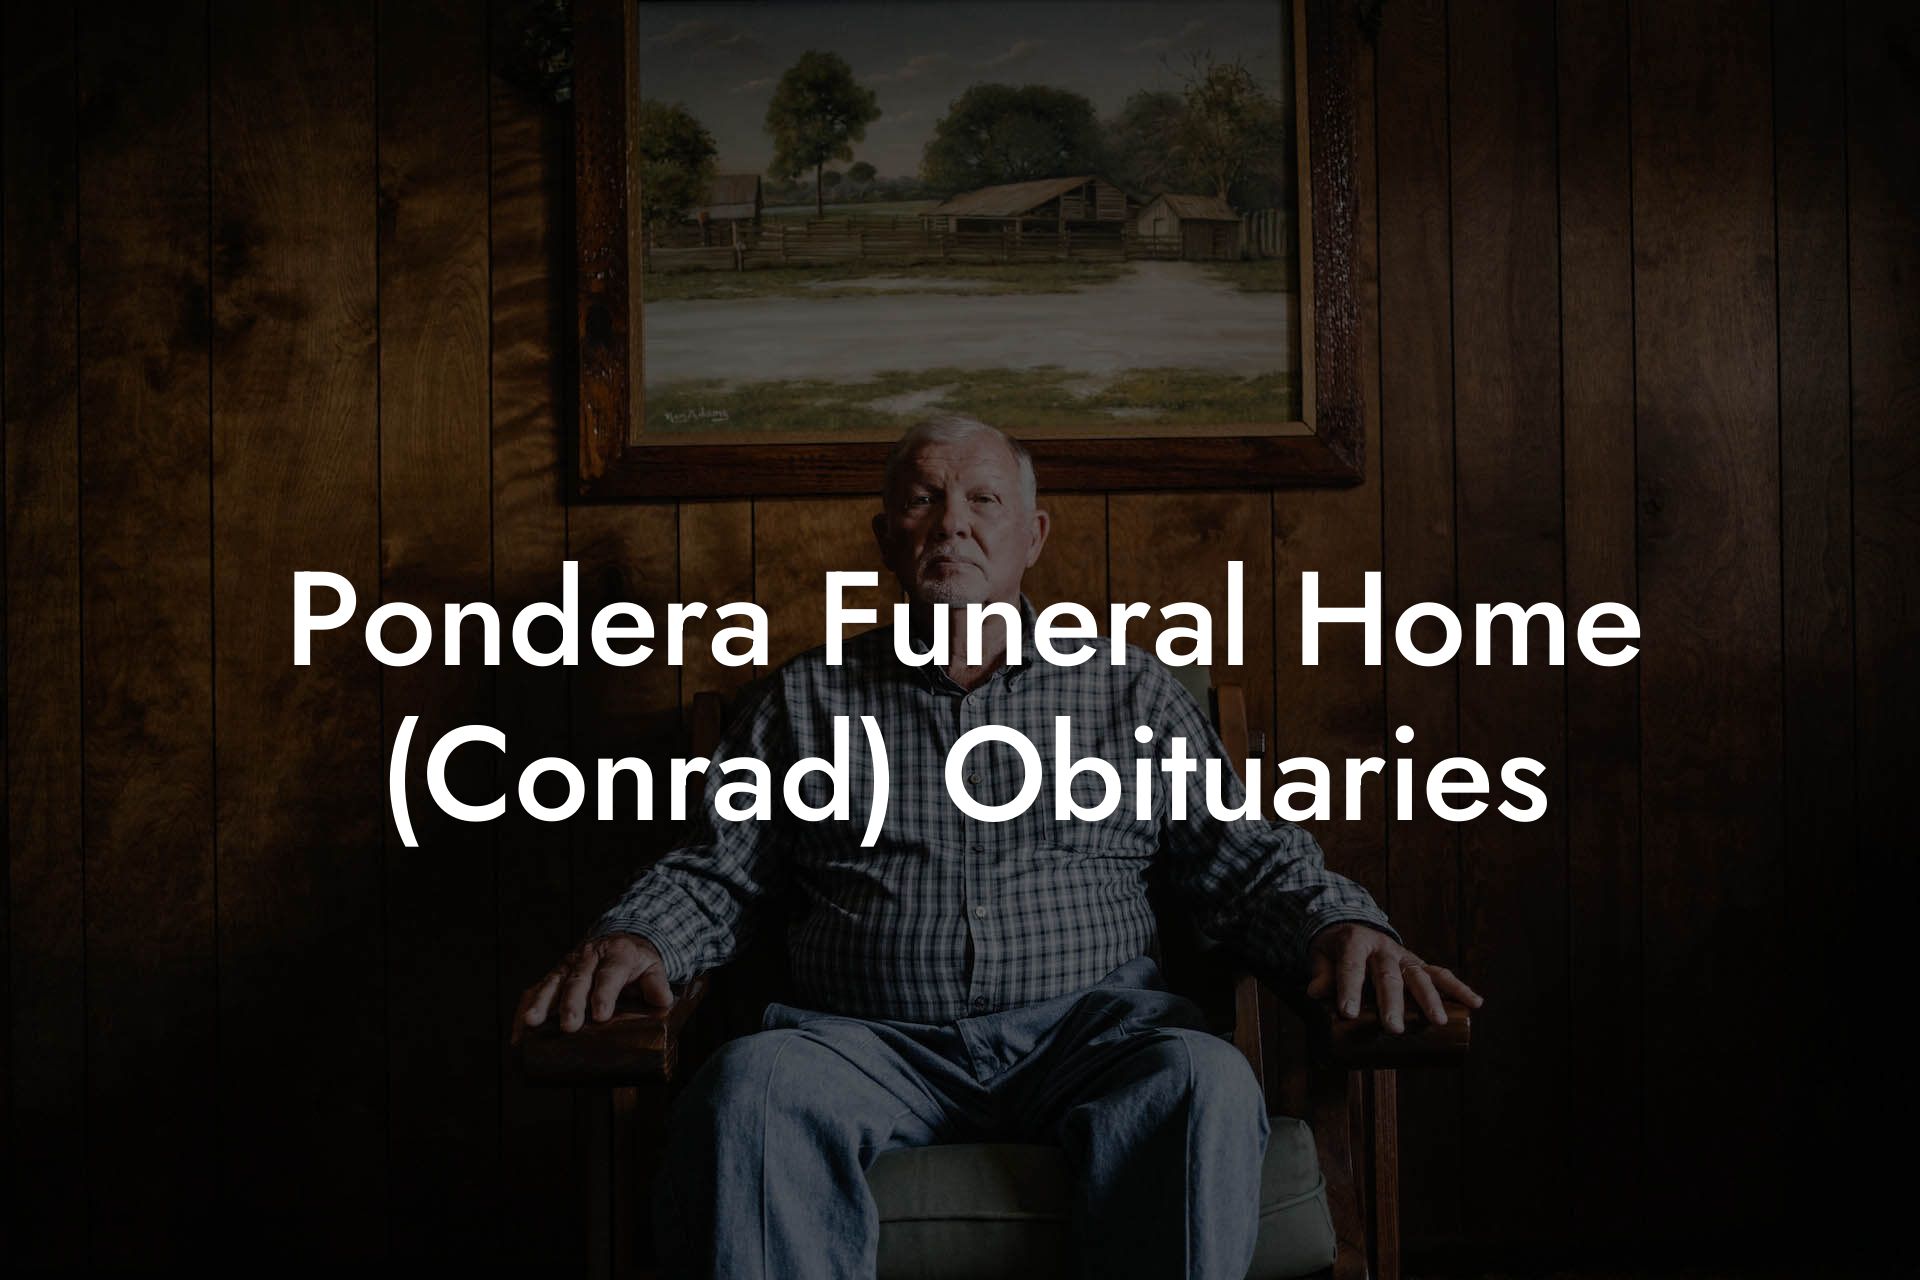 Pondera Funeral Home (Conrad) Obituaries